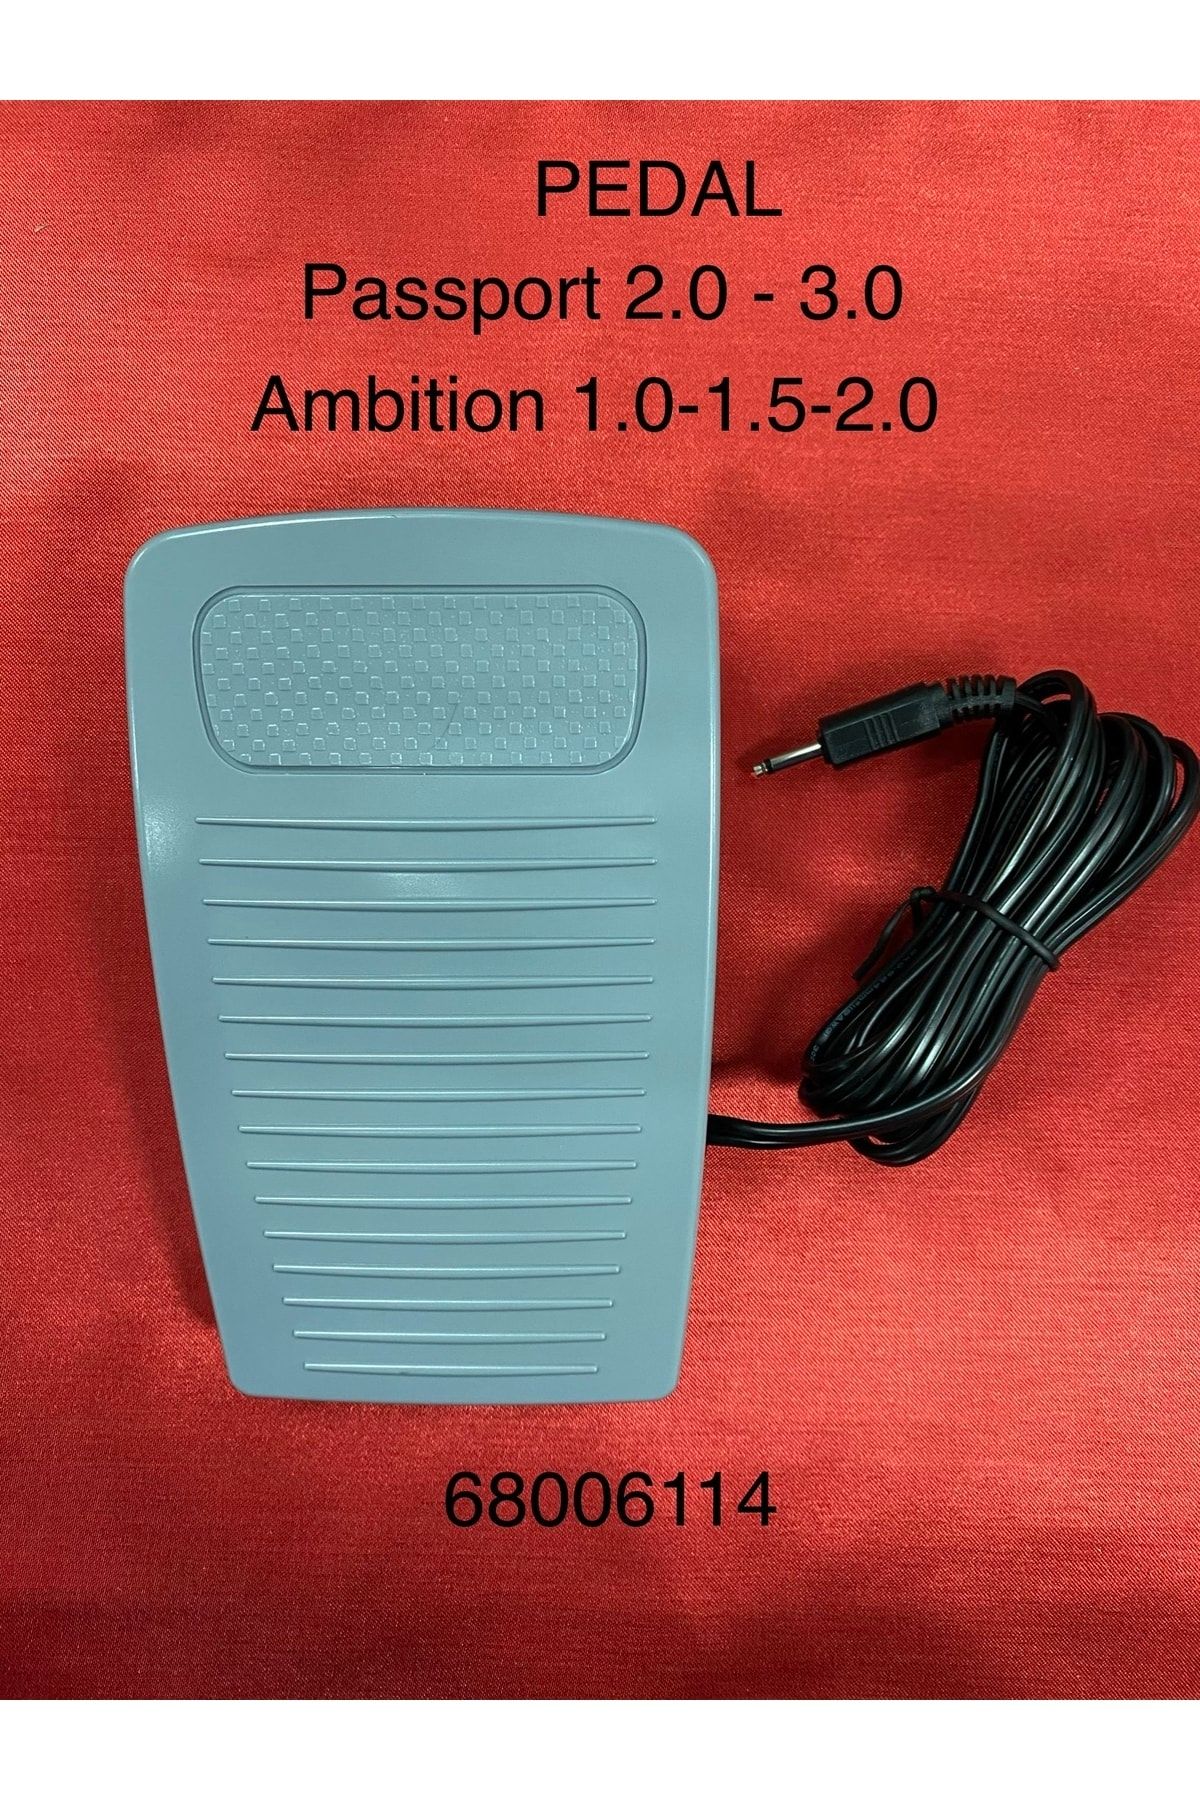 Pfaff Pedal -68006114- Passport 2.0 - 3.0 & Ambition 1.0 - 1.5 - 2.0